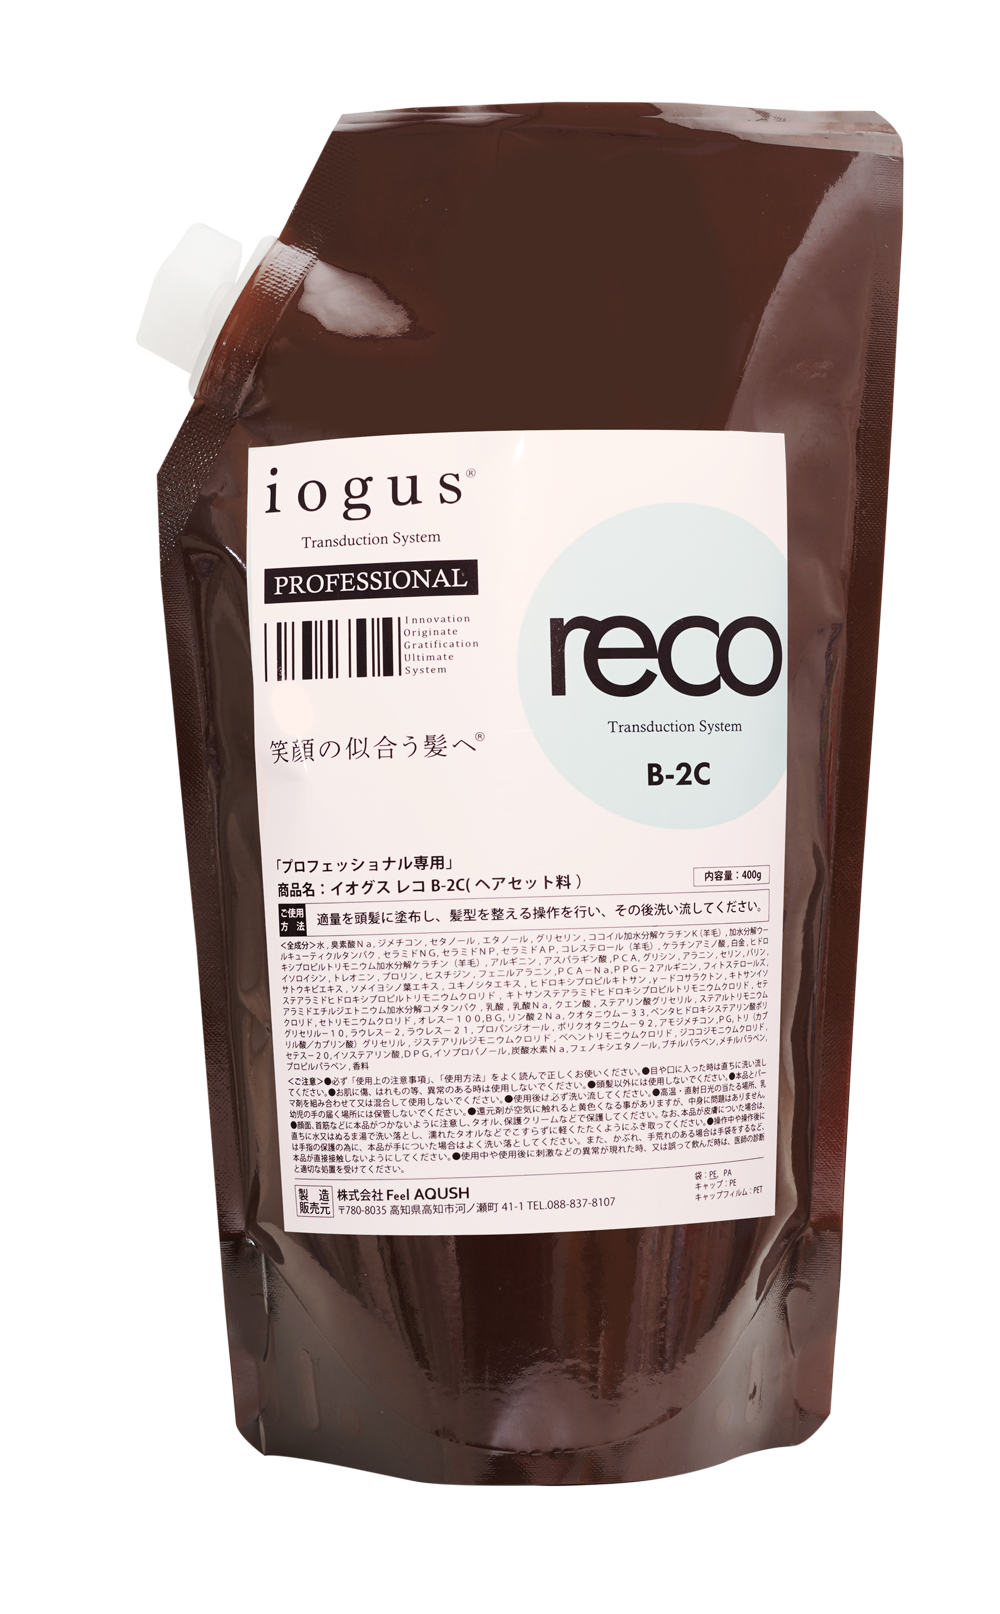 これはすごい！と驚くほどに髪が若返る。iogus reco(イオグス レコ)とは？ | 株式会社レボ｜REVO｜美容ディーラー商社